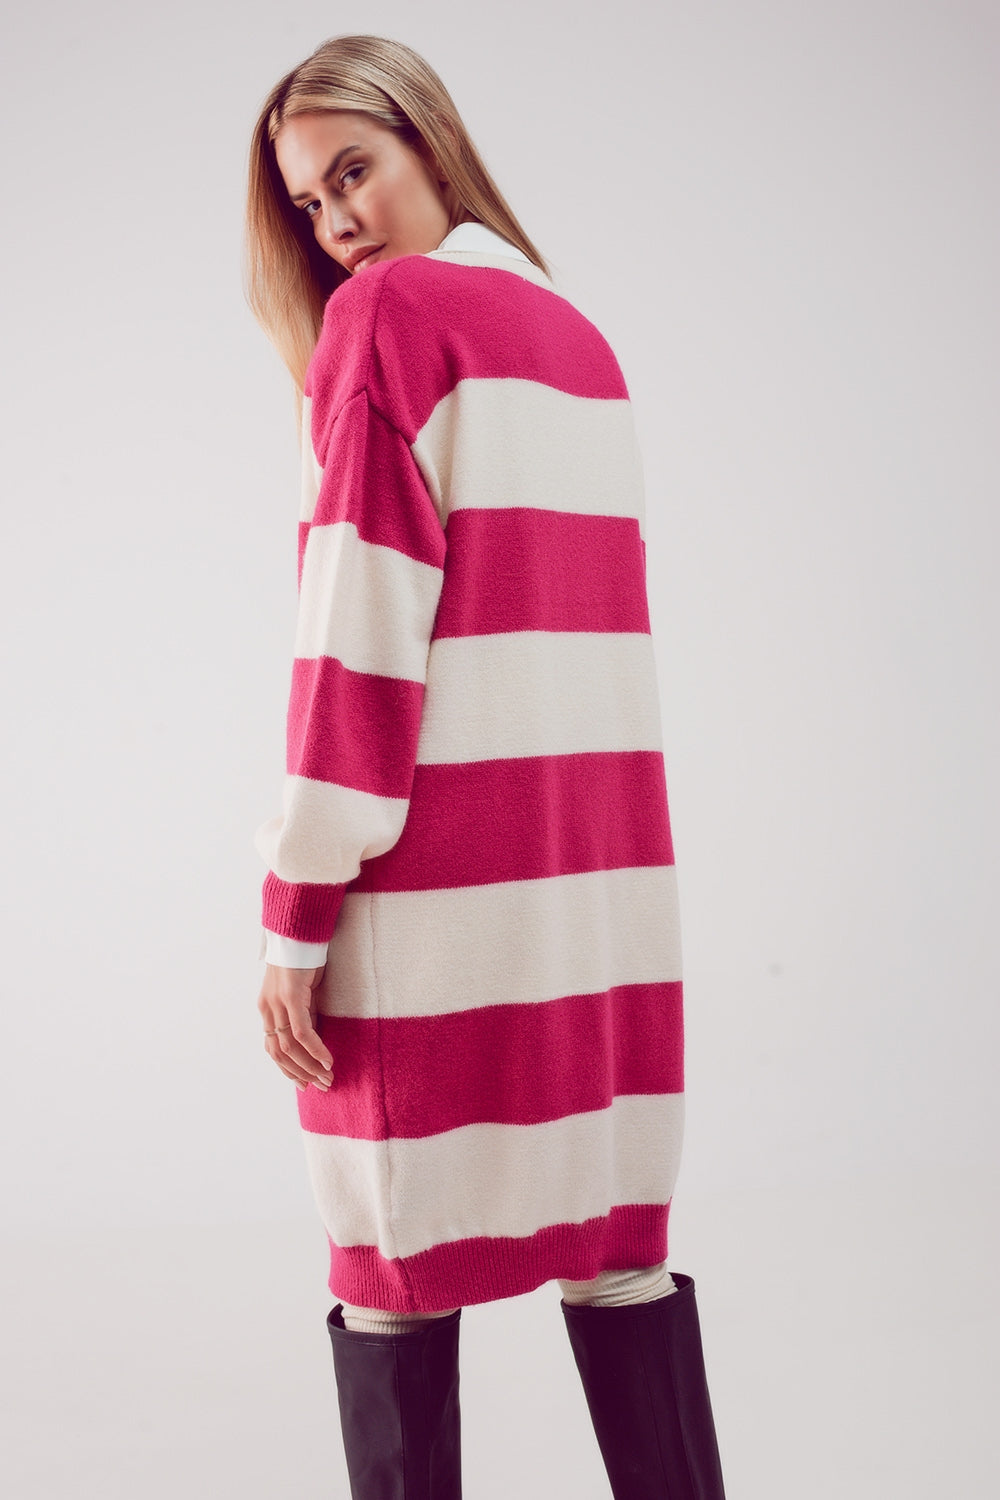 Stripe jumper dress in fuchsia Szua Store